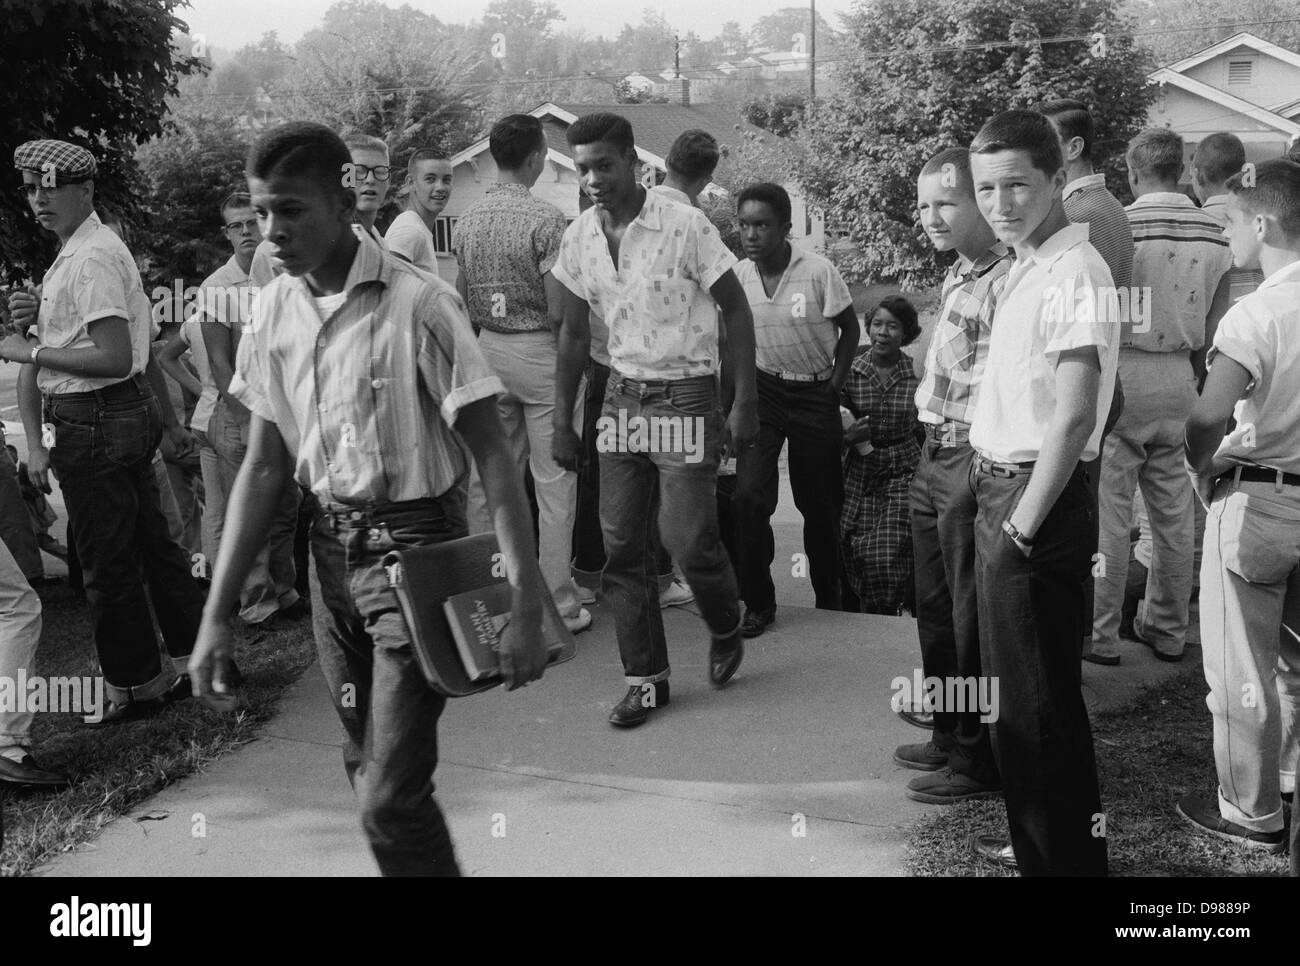 Line of African American boys marche à travers une foule de garçons blancs pendant une période de violences liées à l'intégration scolaire, Little Rock, Arkansas, 4 décembre 1956. Photographe, Thomas J. O'Halloran. Banque D'Images